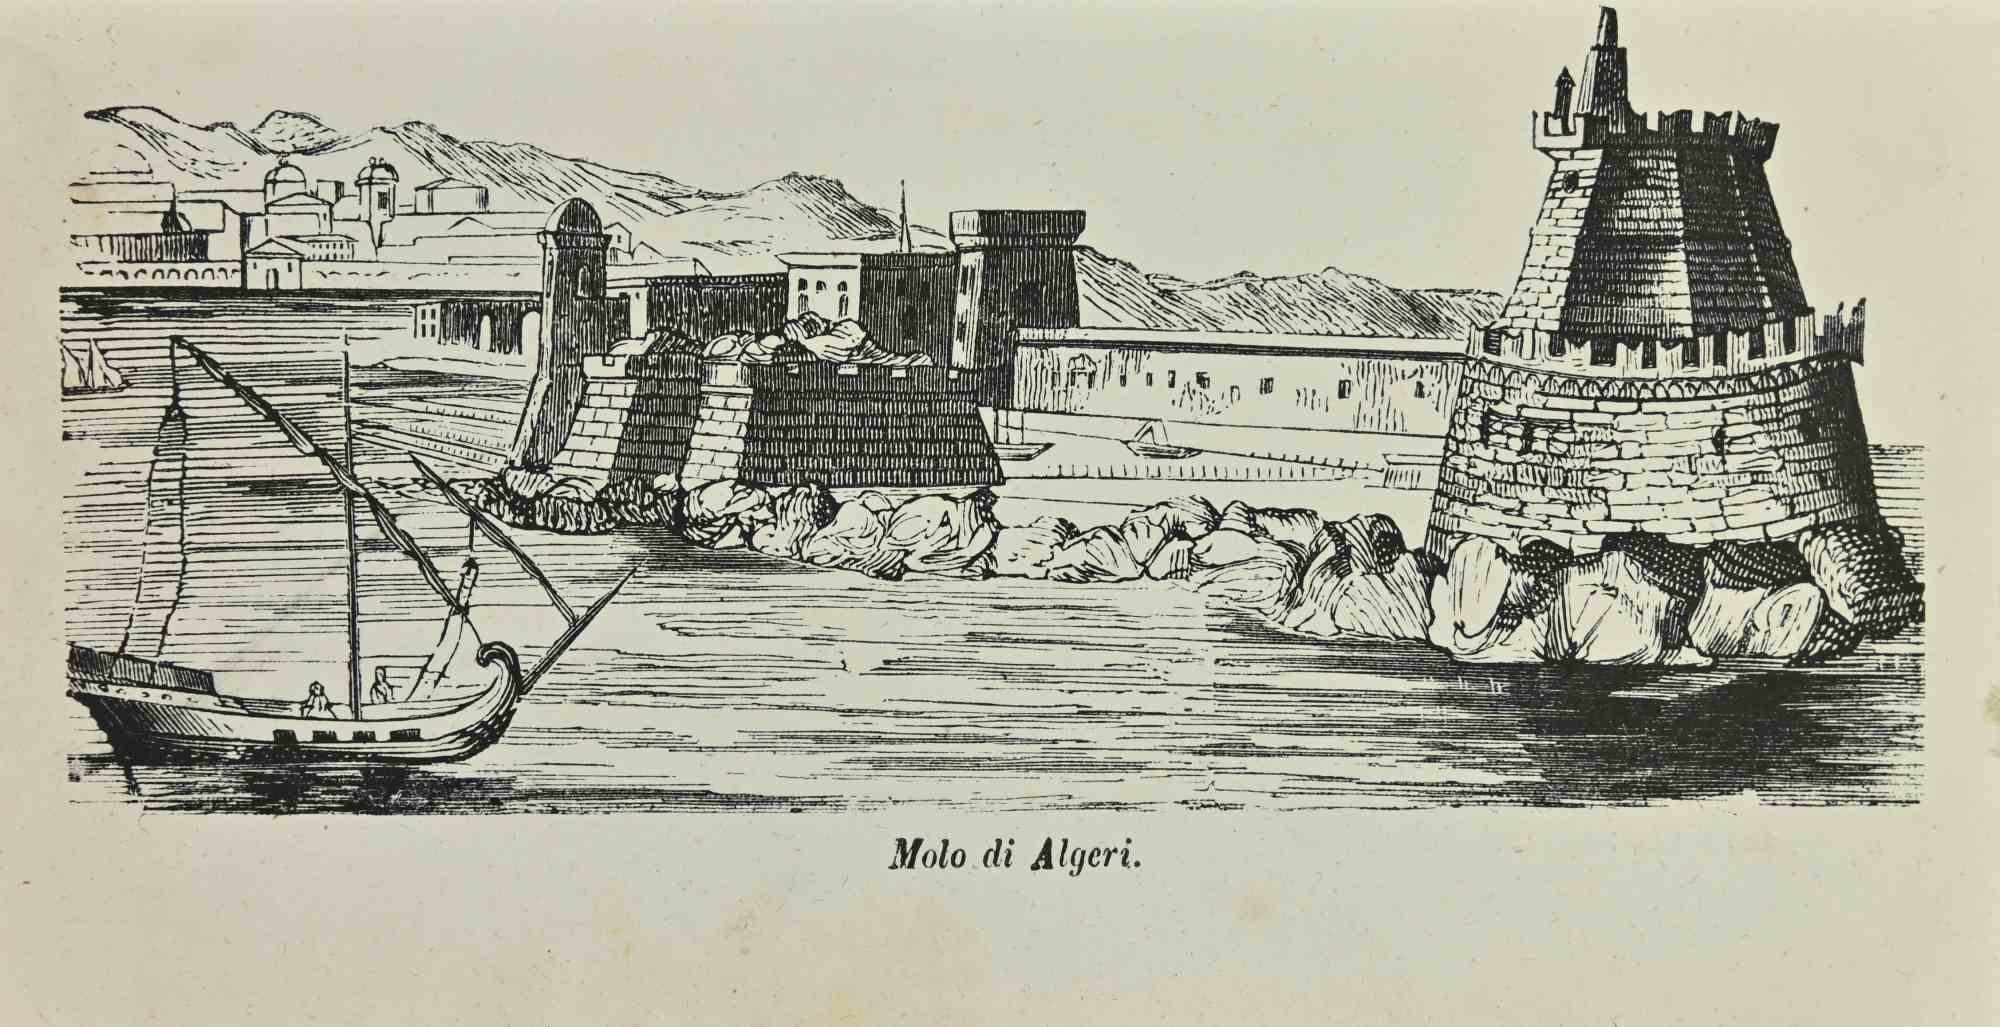 Pier in Algiers is a lithograph made by Auguste Wahlen in 1844.

Good condition.

At the center of the artwork is the original title "Molo di Algeri".

The work is part of Suite Moeurs, usages et costumes de tous les peuples du monde, d'après des